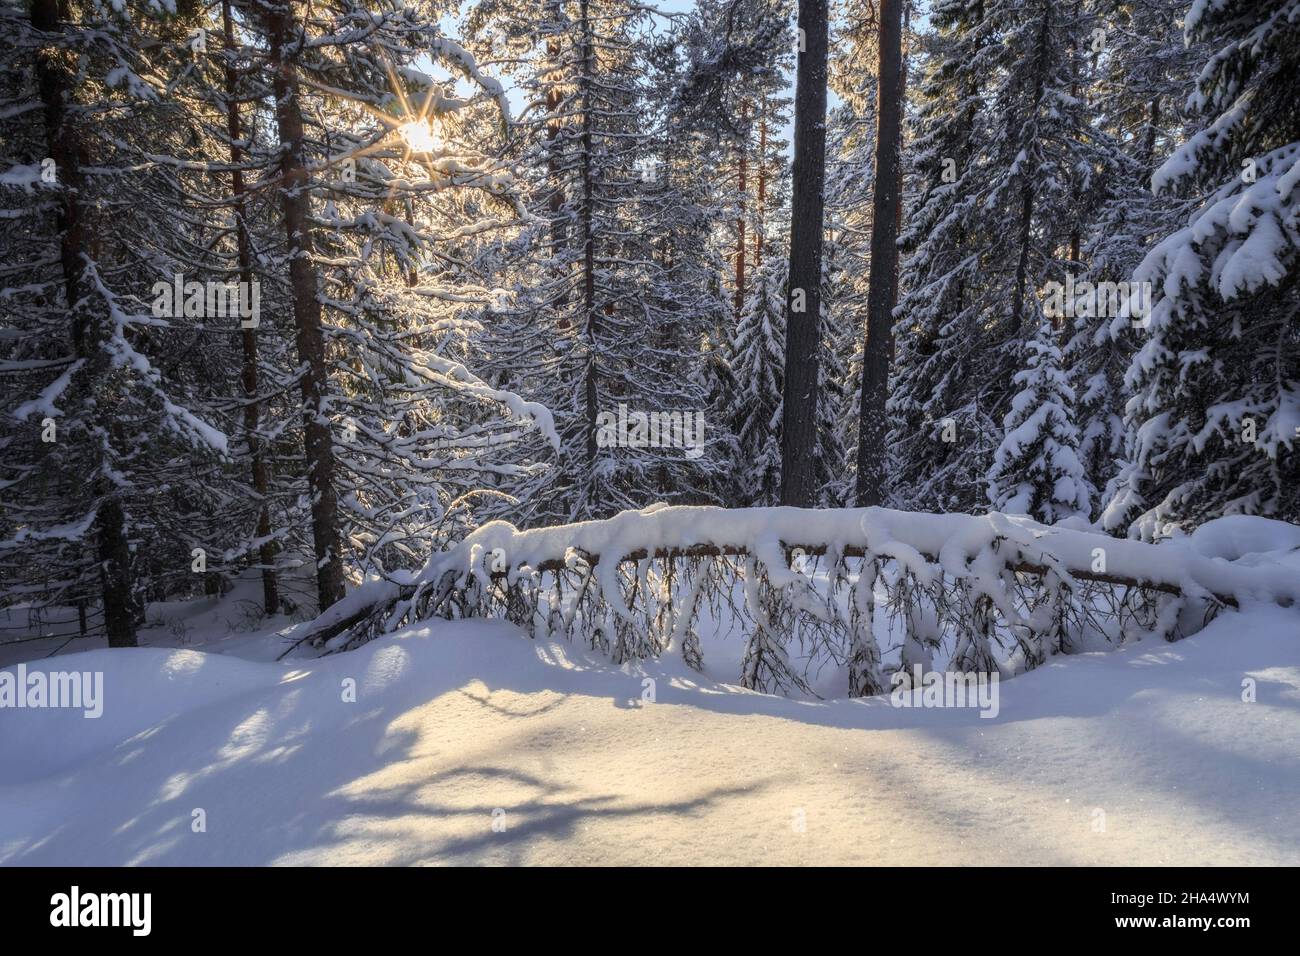 albero cadente, sole raes con neve in una foresta, inverno, paesaggio di montagna durante il giorno Foto Stock